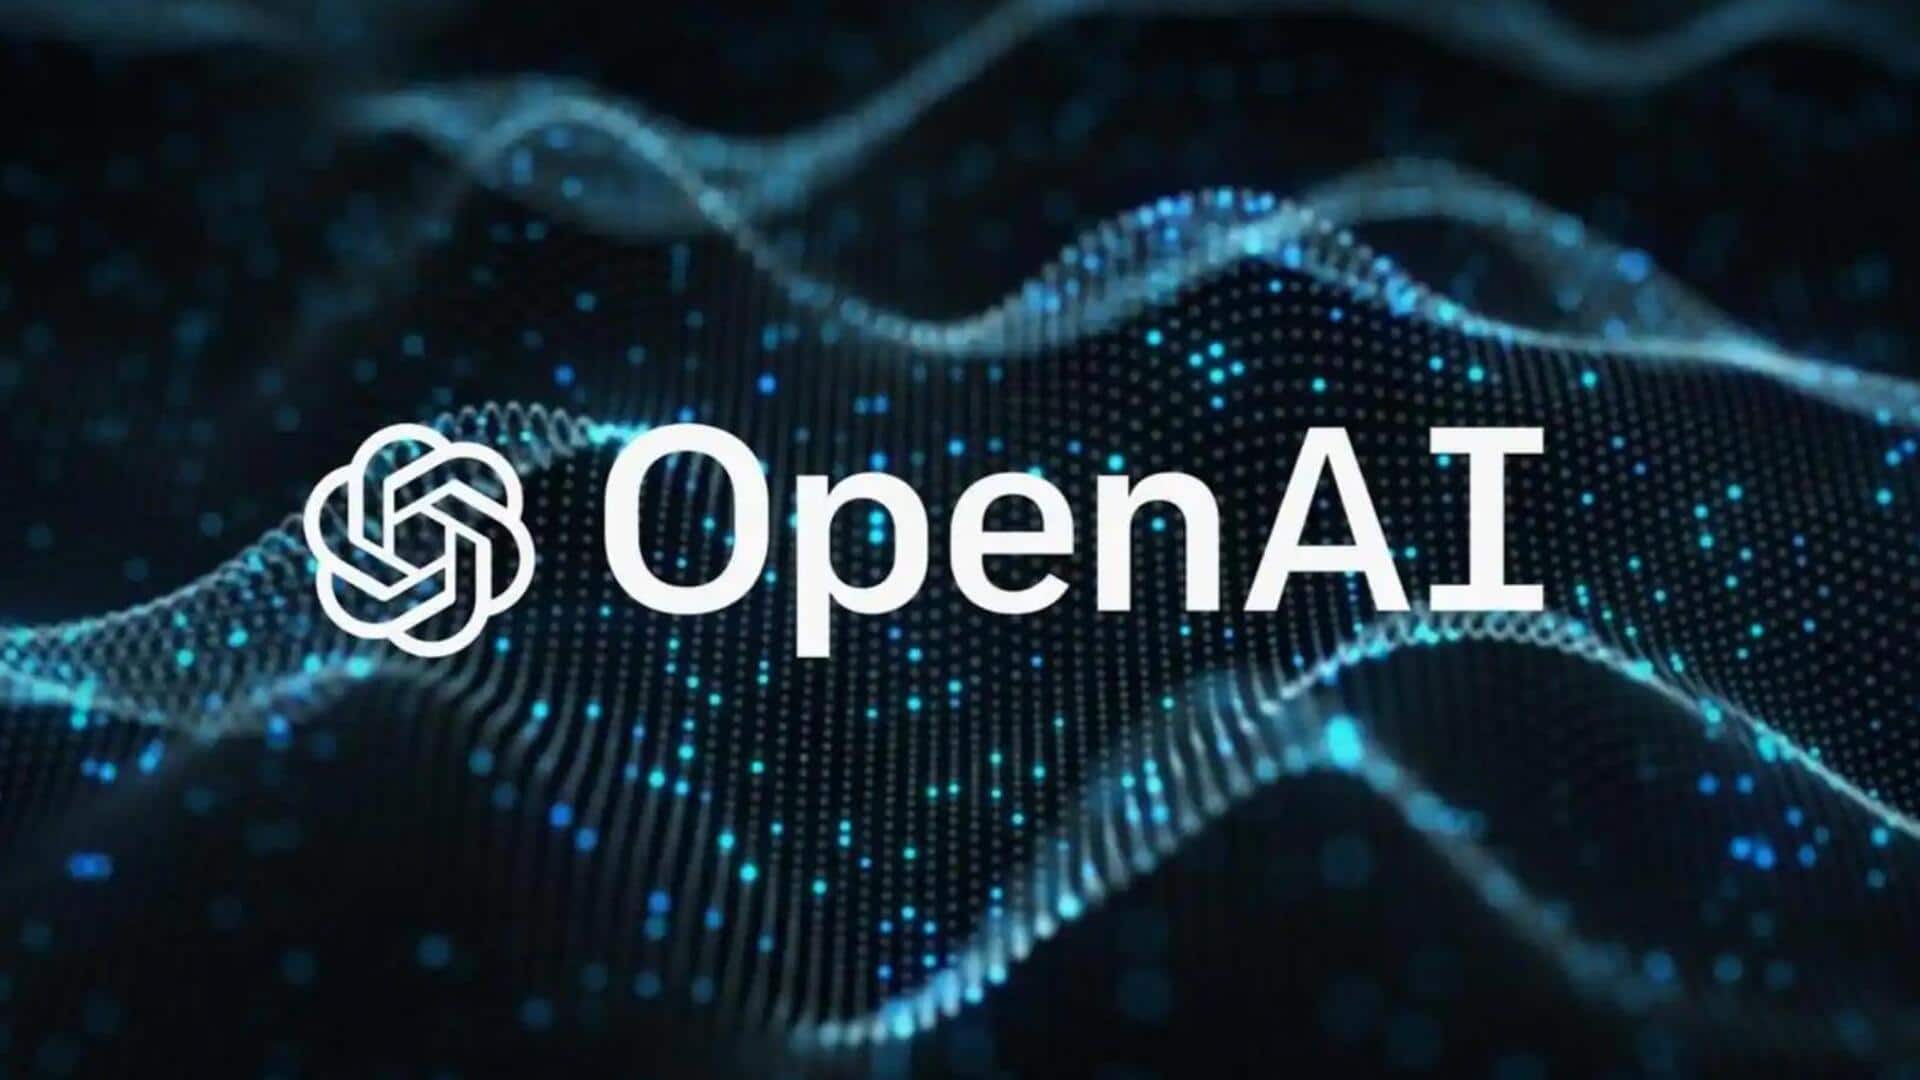 OpenAI का राजस्व इस साल हो सकता है दोगुना, सैम ऑल्टमैन ने दिए संकेत